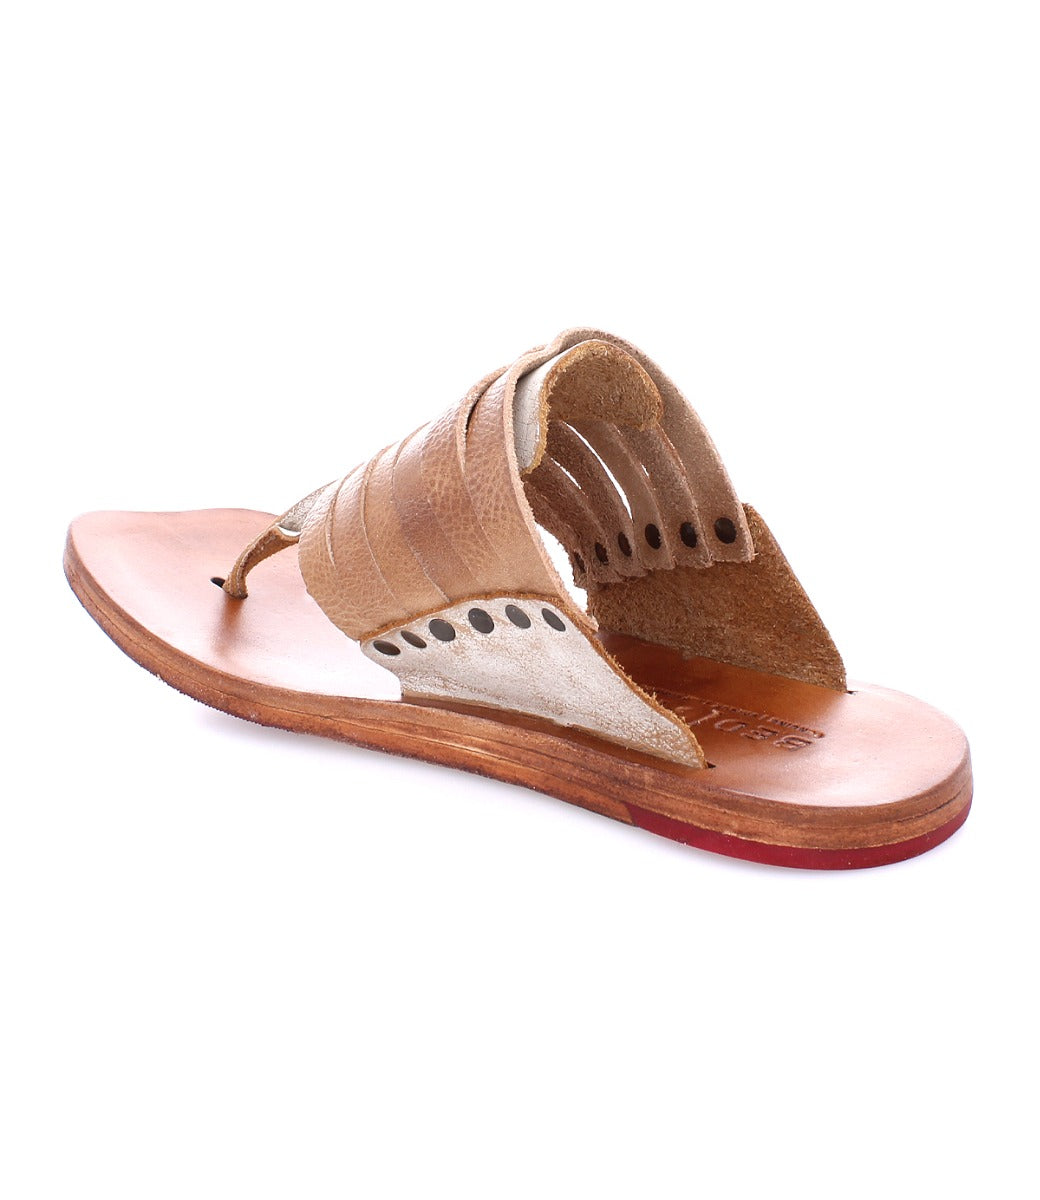 Bed Stu's Nemesis women's tan leather flip flop sandals.